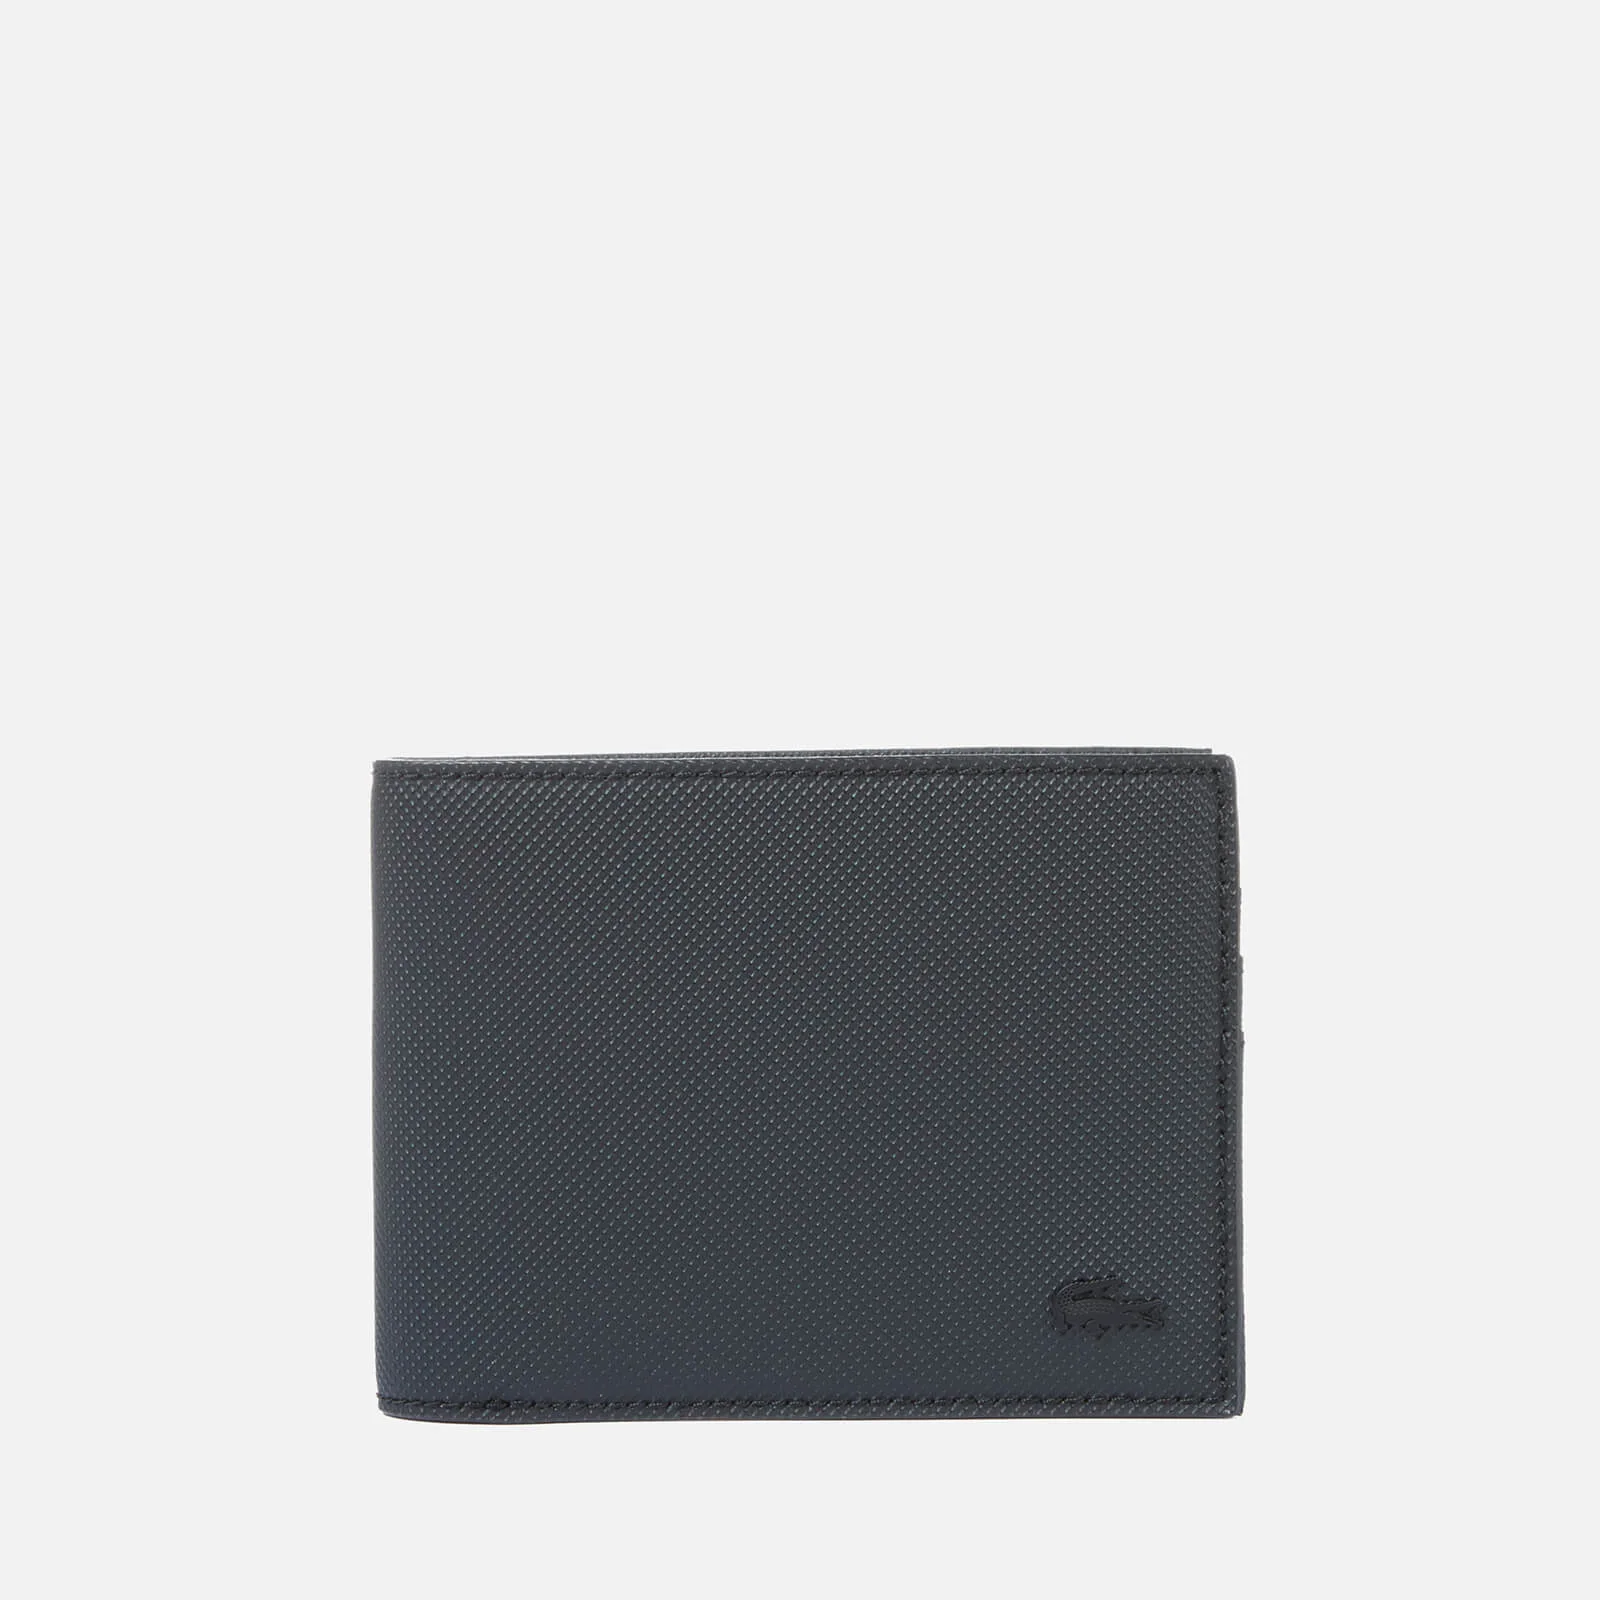 Lacoste Men's Billfold Wallet - Black Image 1